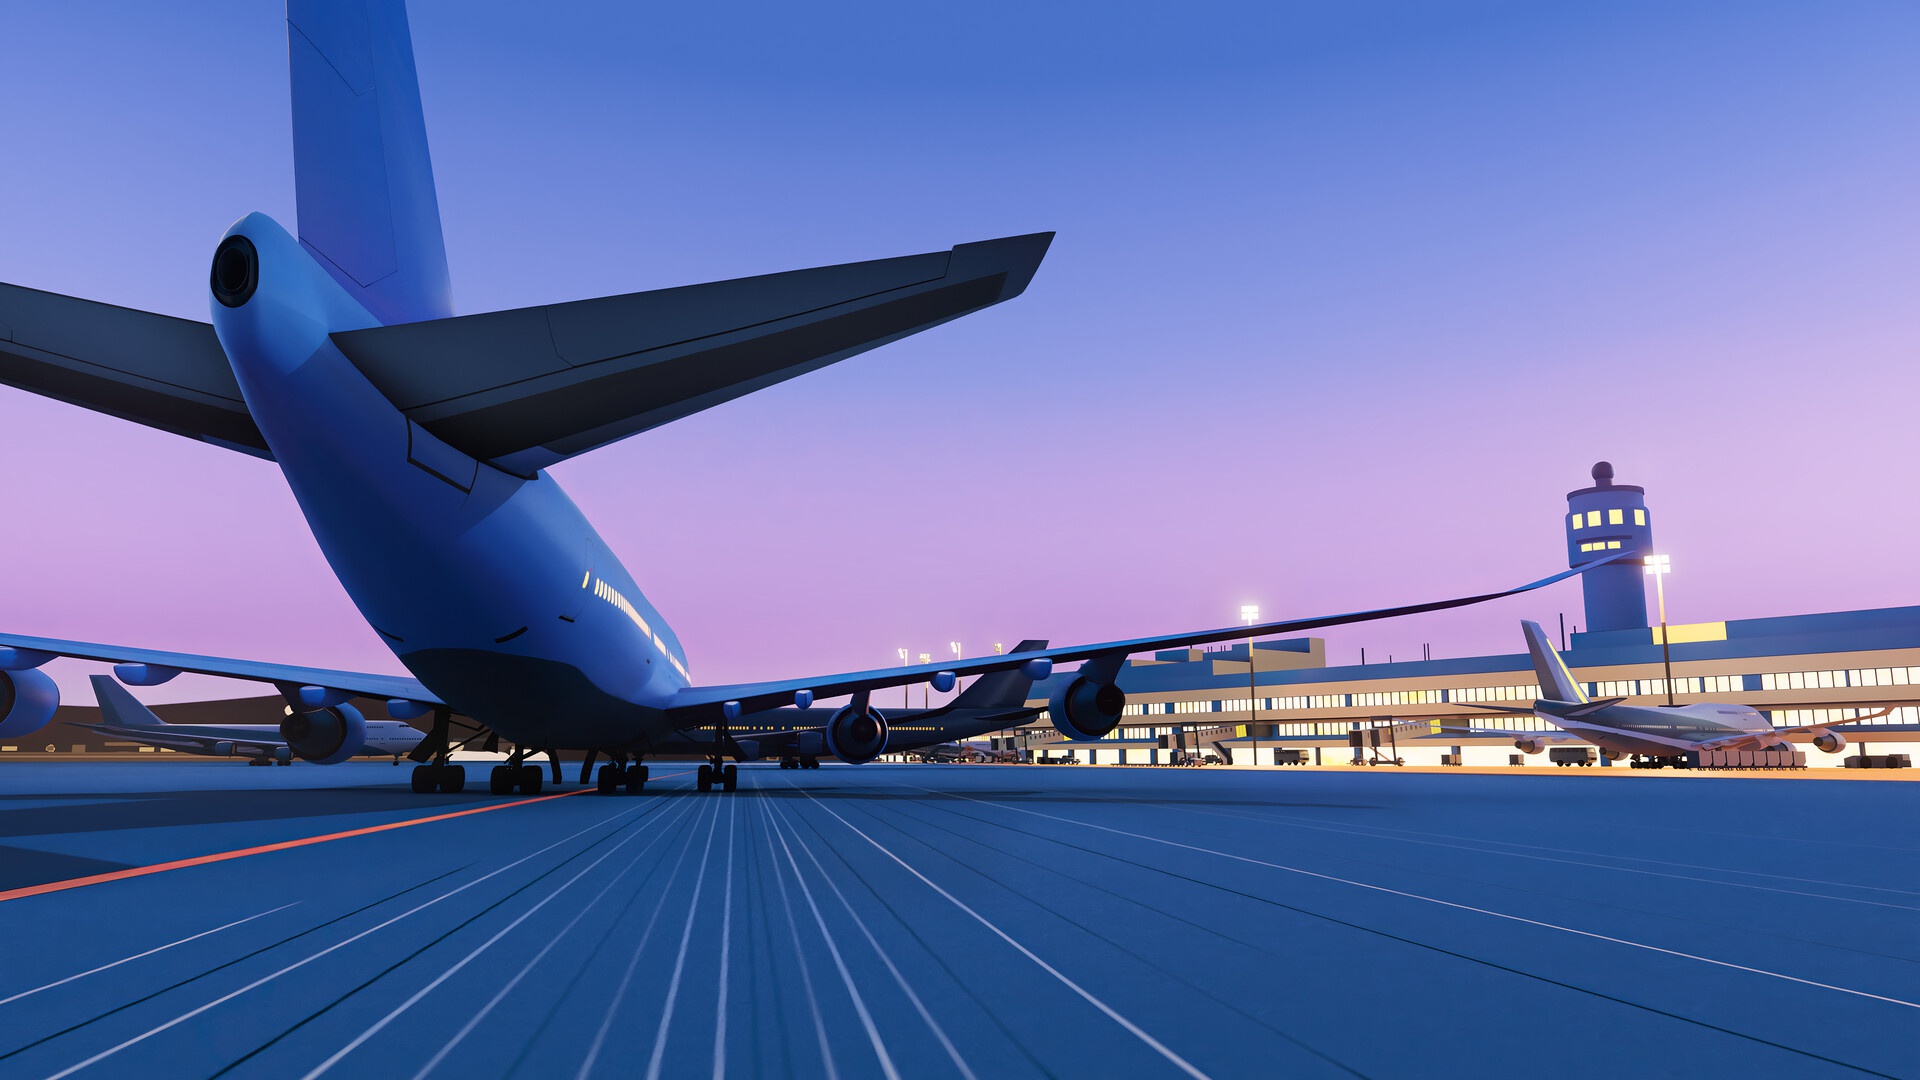 Aircraft Vehicle Render Passenger Aircraft Runway Artwork Digital Art Airport 1920x1080